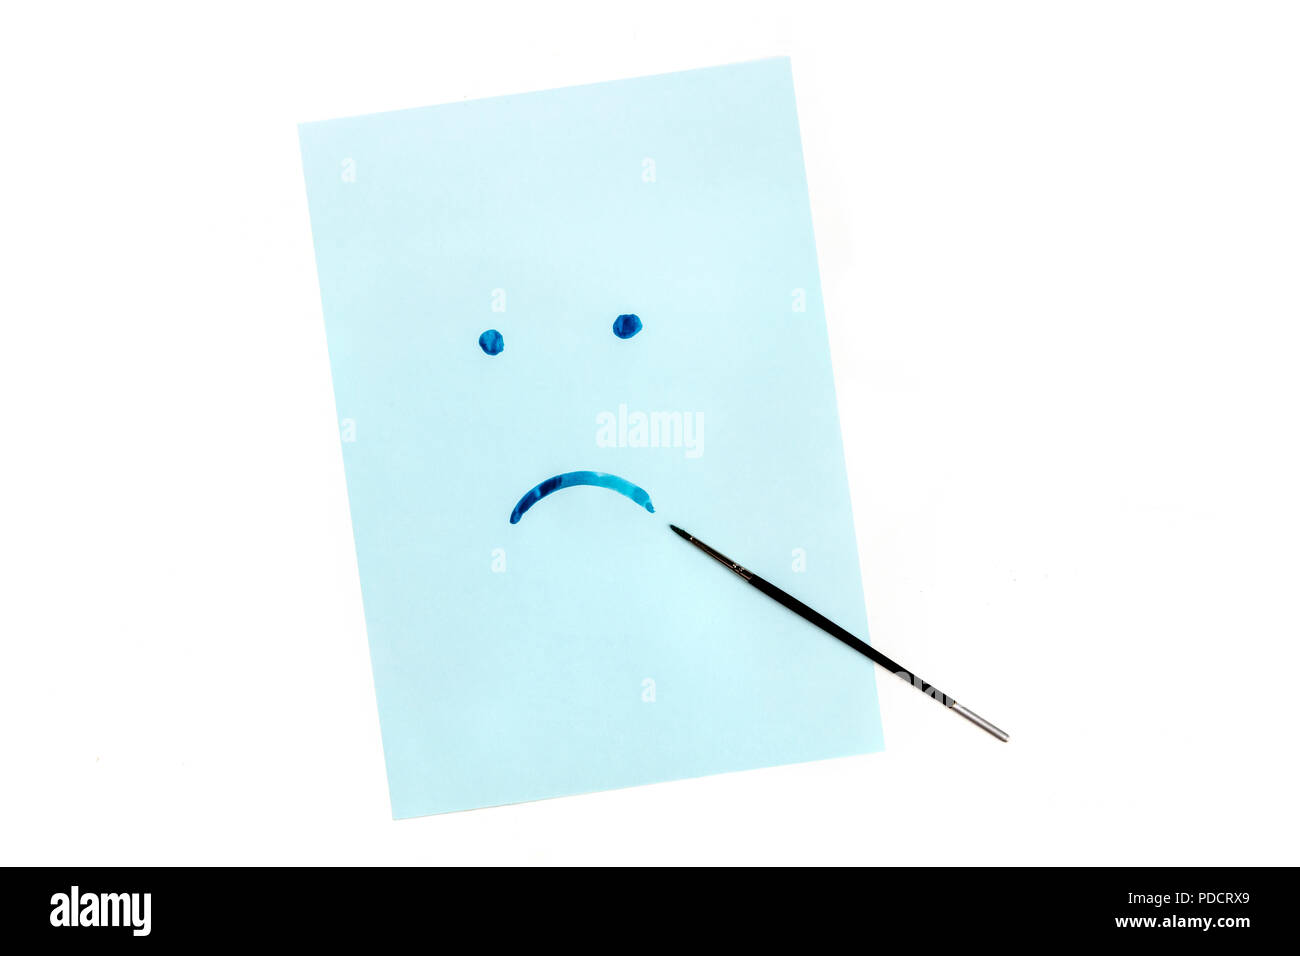 Bleu, une photo prise à la verticale d'un triste visage peint à la main sur du papier bleu à l'aquarelle, la dépression, concept with copy space Banque D'Images